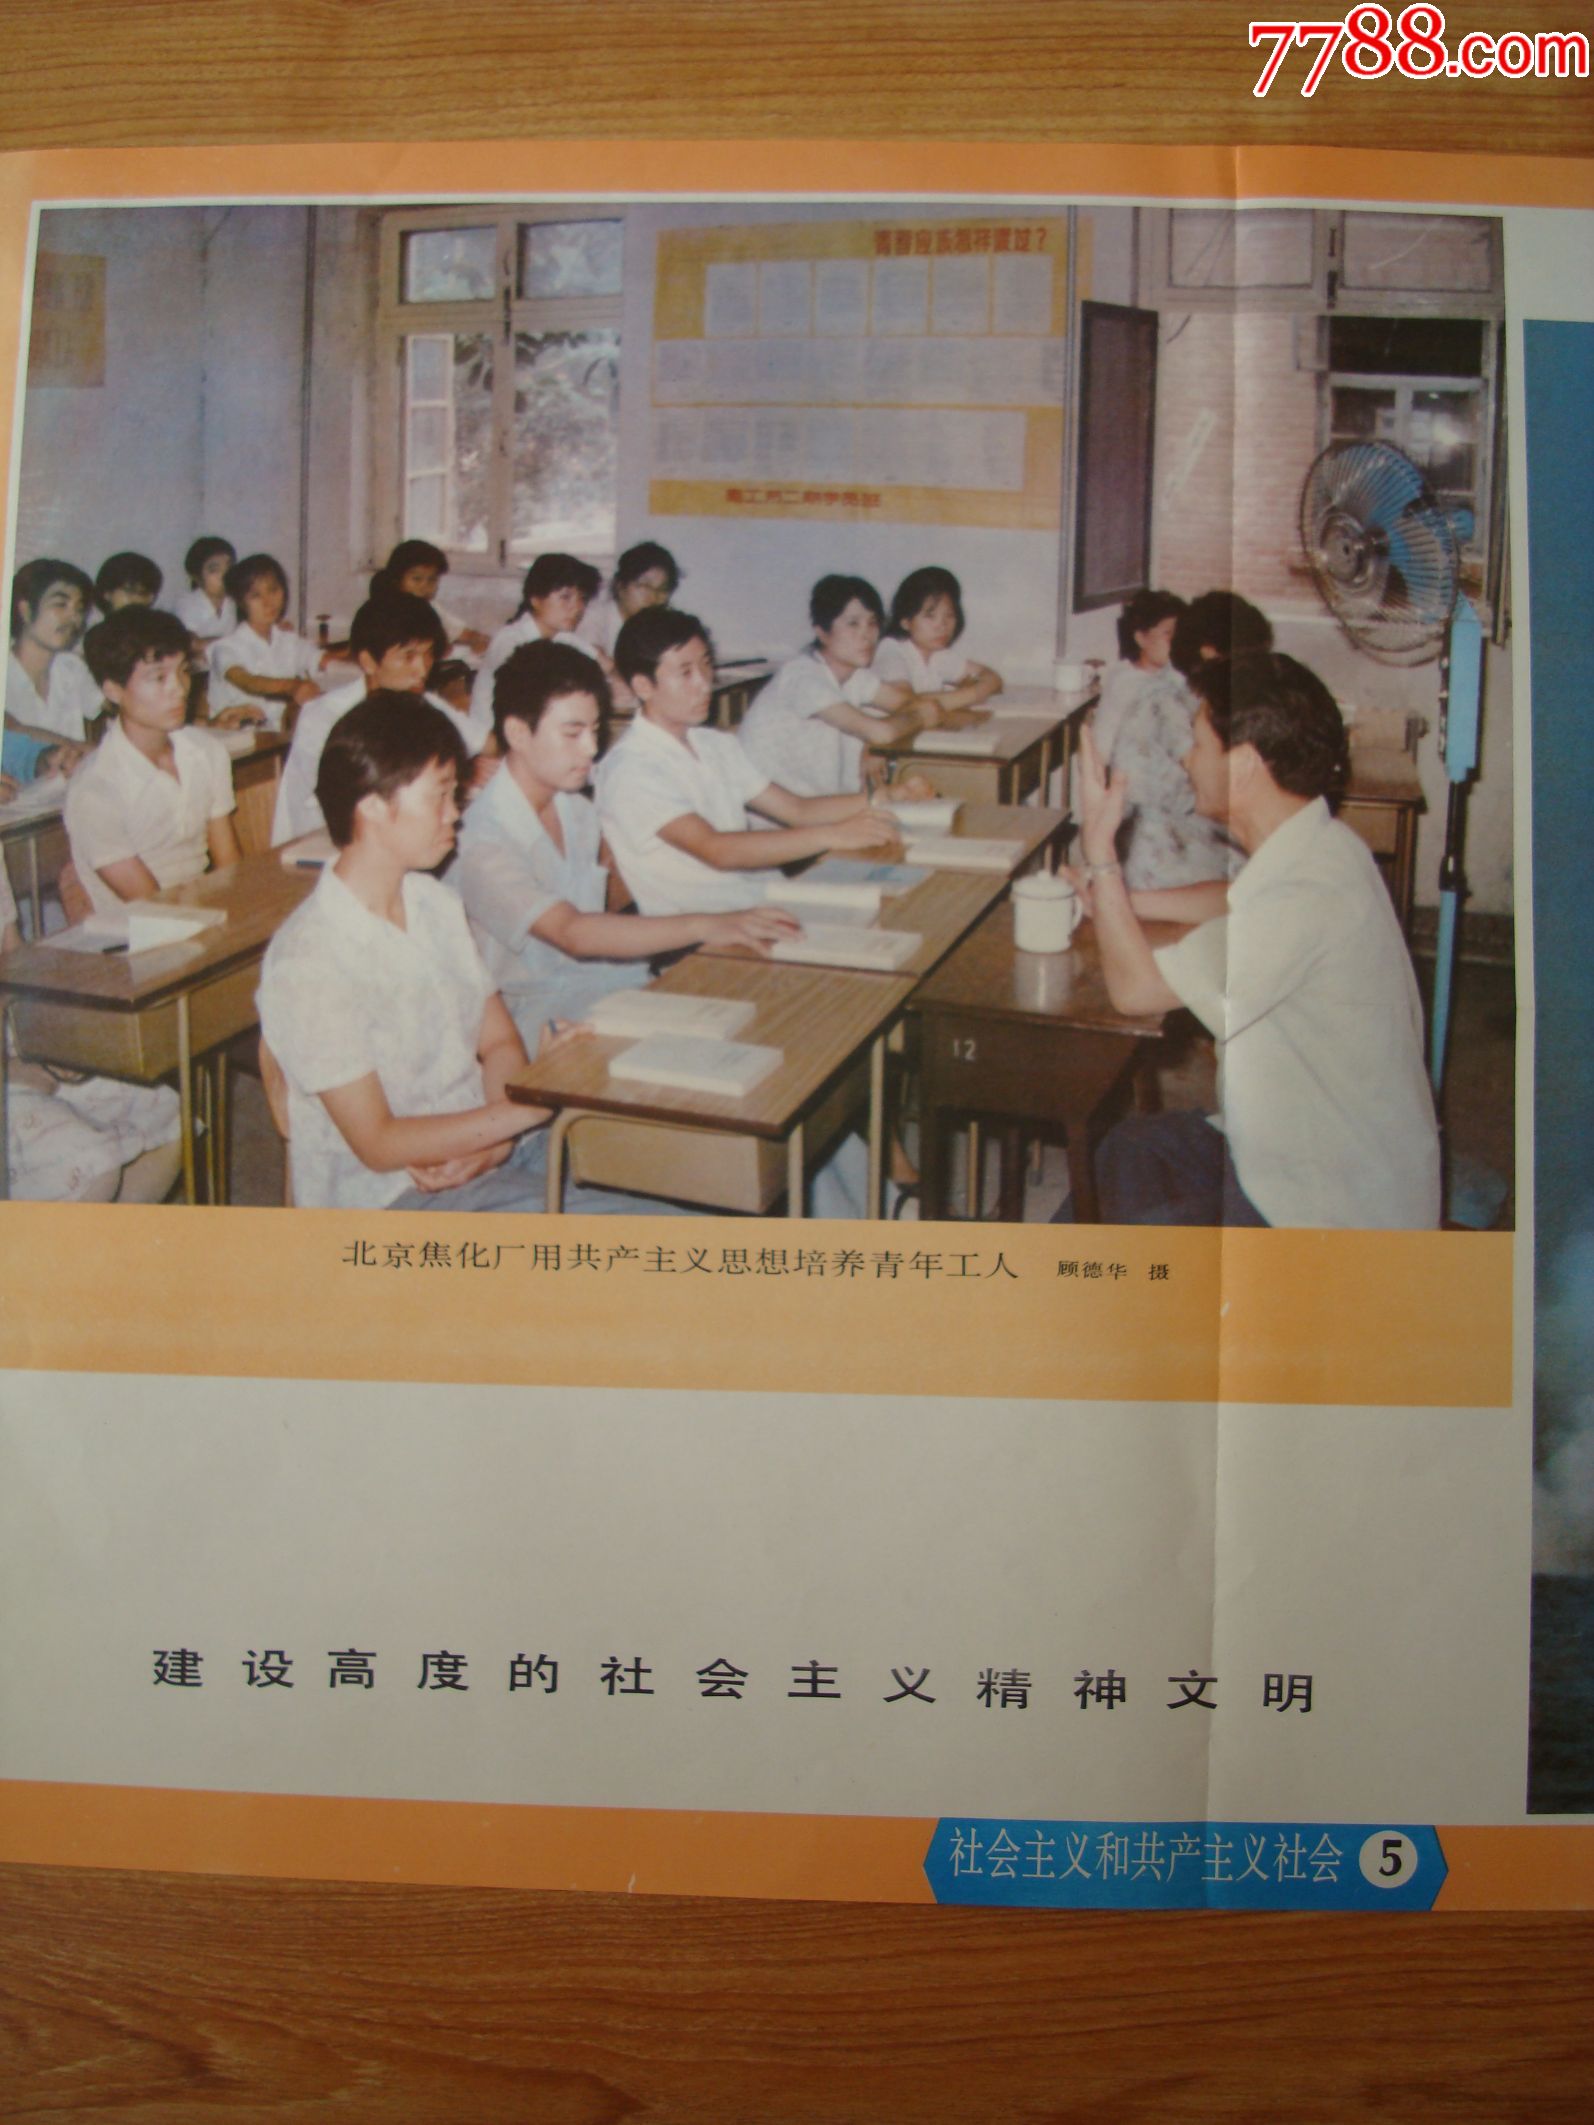 1983年北京初级中学社会发展简史教学挂图第六辑社会主义和共产主义